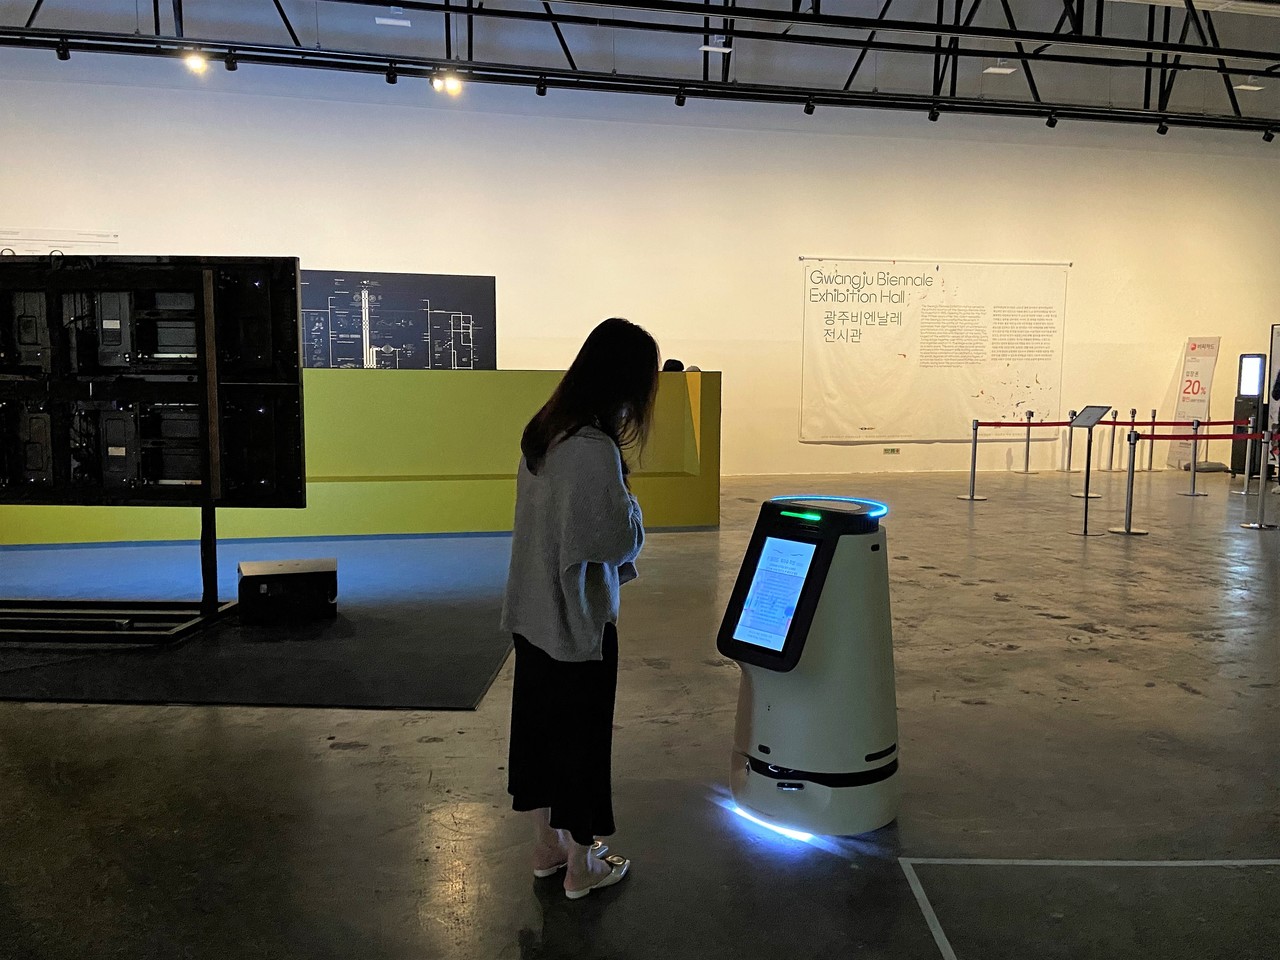 평일 낮, 한산한 시간에 비엔날레 전시관을 찾은 시민들은 모두 한 번씩 로봇에게 시선을 두었다. 한 시민이 작품해설을 읽는 모습. (사진=박혜섭 기자).